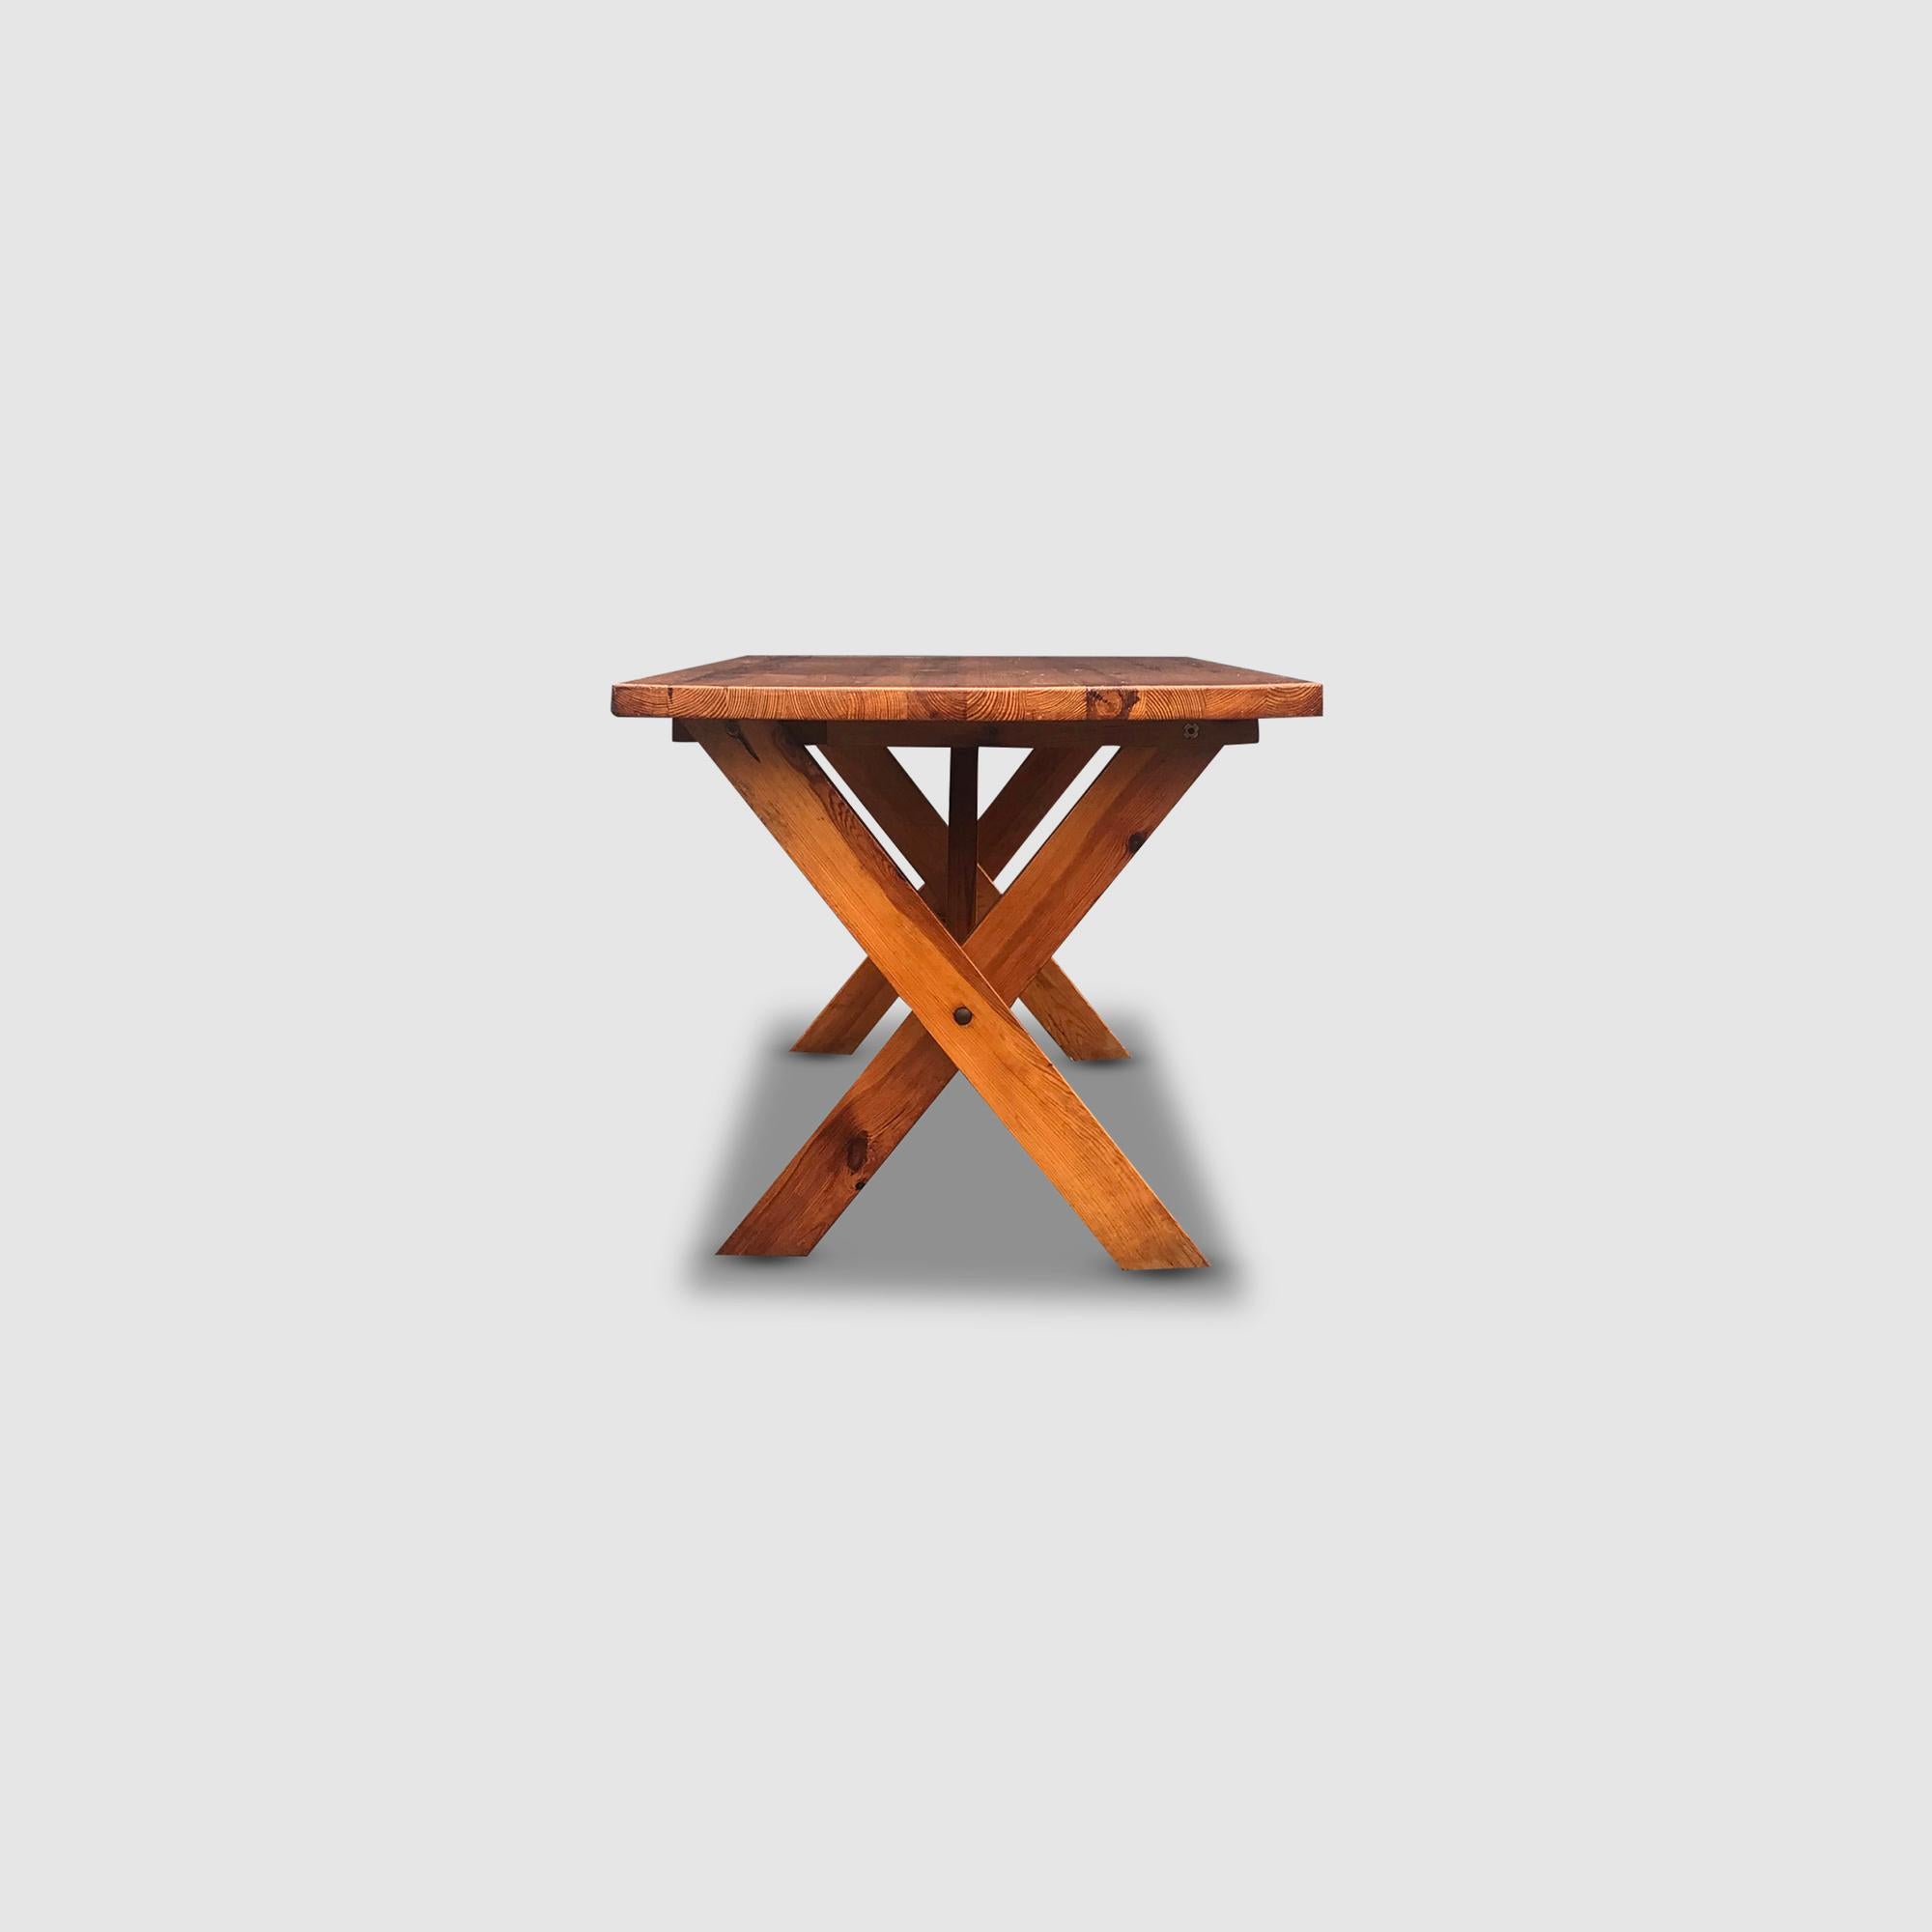 Modernist X-leg dining table by Ate van Apeldoorn for Houtwerk Hattem 1970s For Sale 4